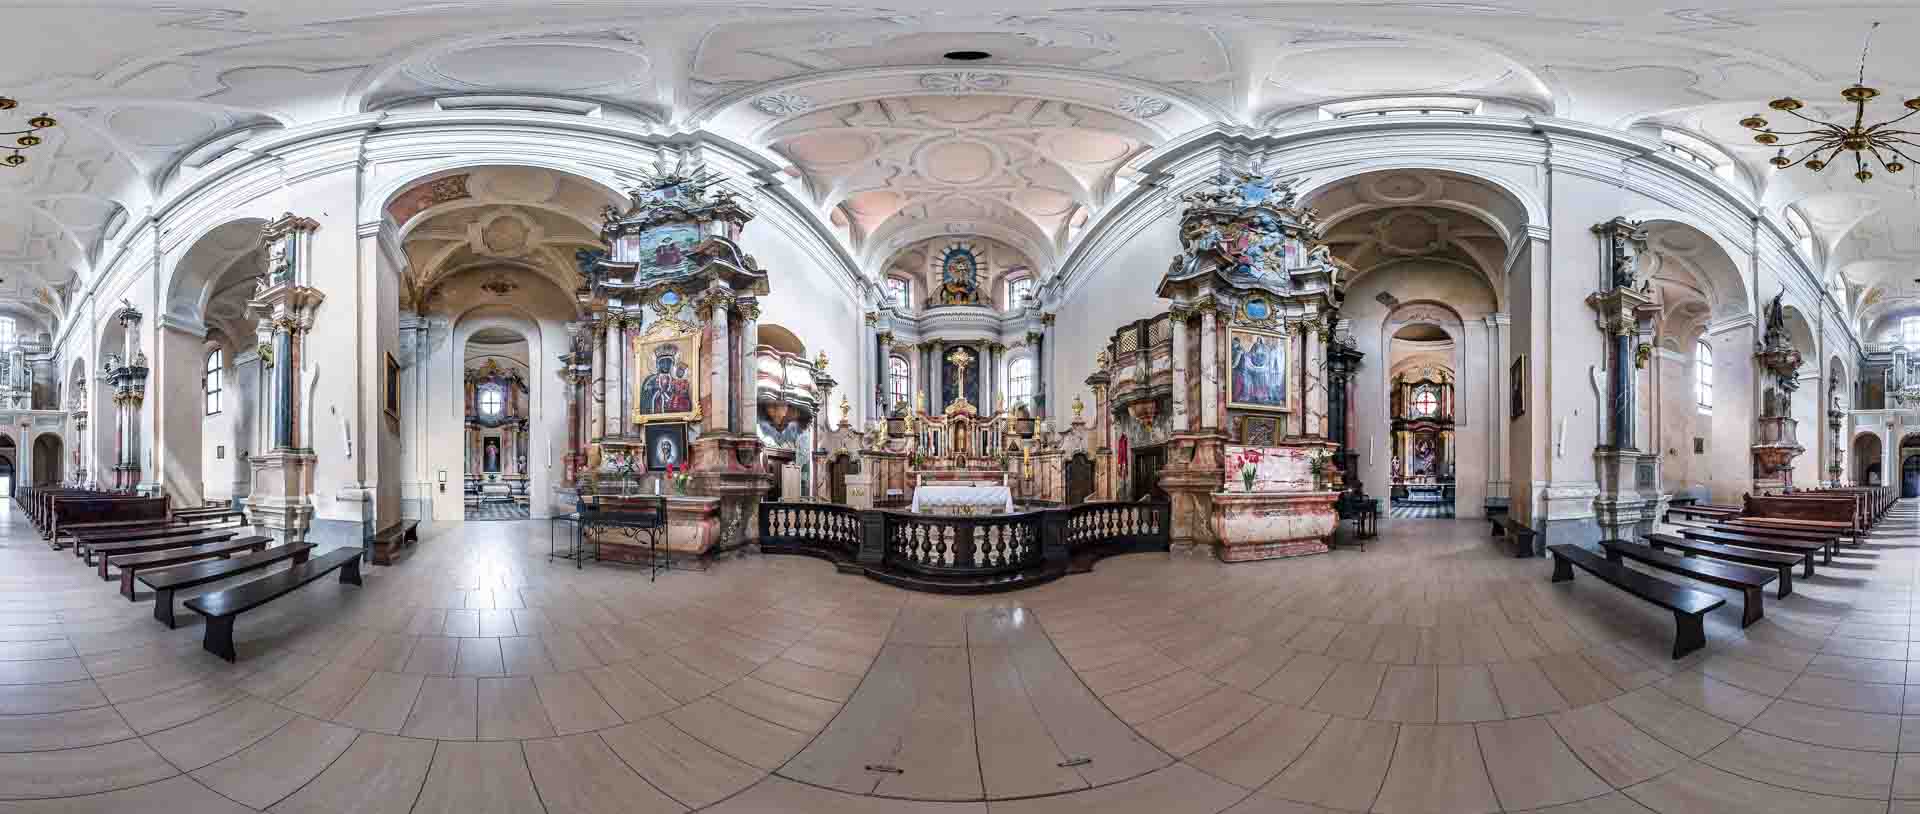 virtual tour 360 foto panoramiche beni culturali artistici religiosi